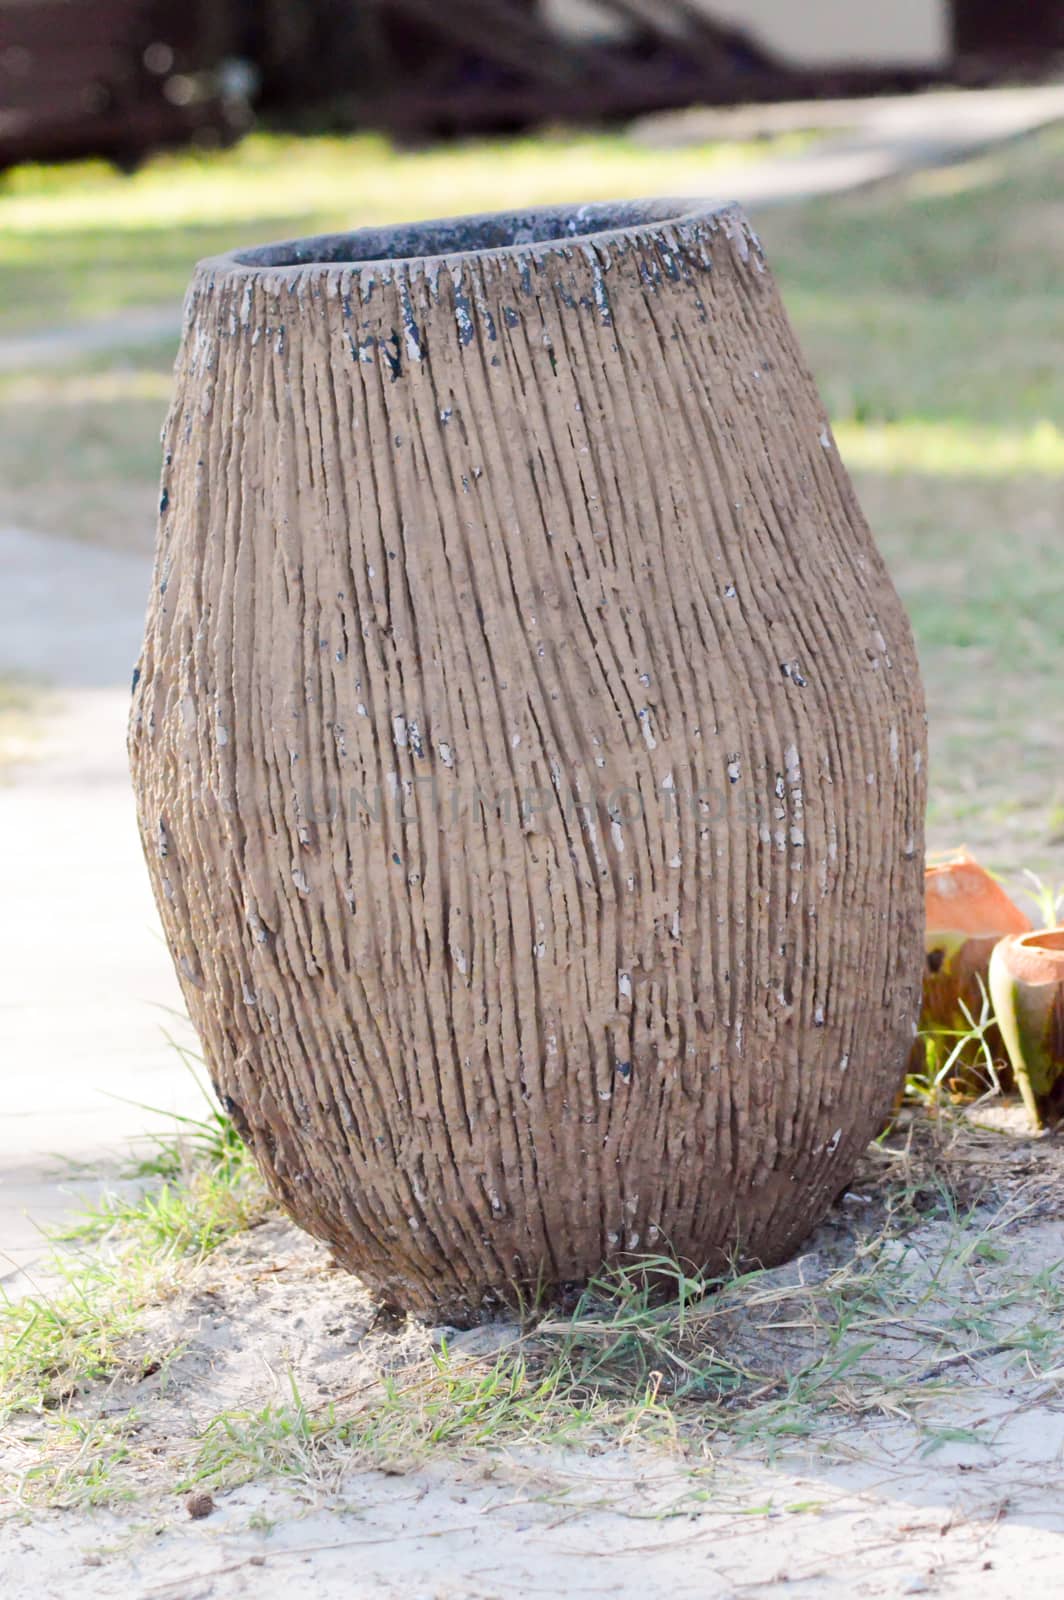 Waste trash bin laid on a lawn in Kenya